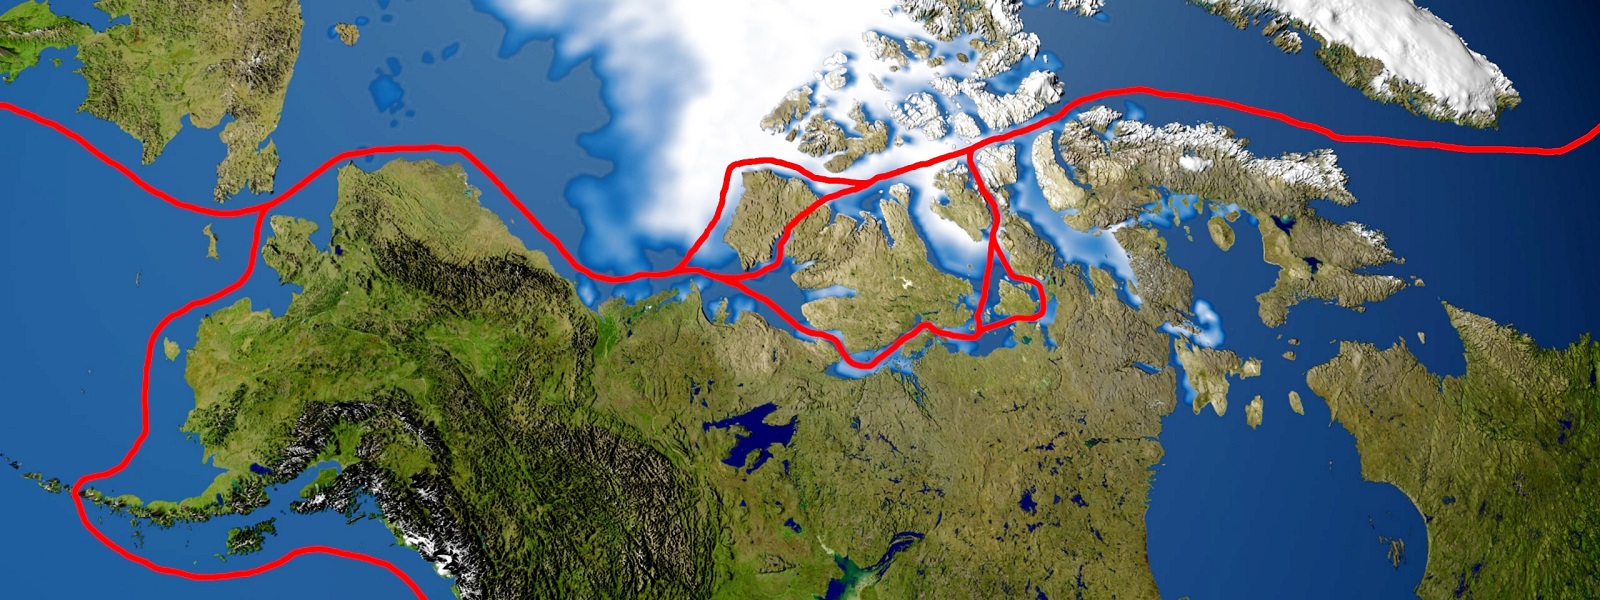 Le passage du nord-ouest est une route maritime qui franchit l'Arctique - image domaine public